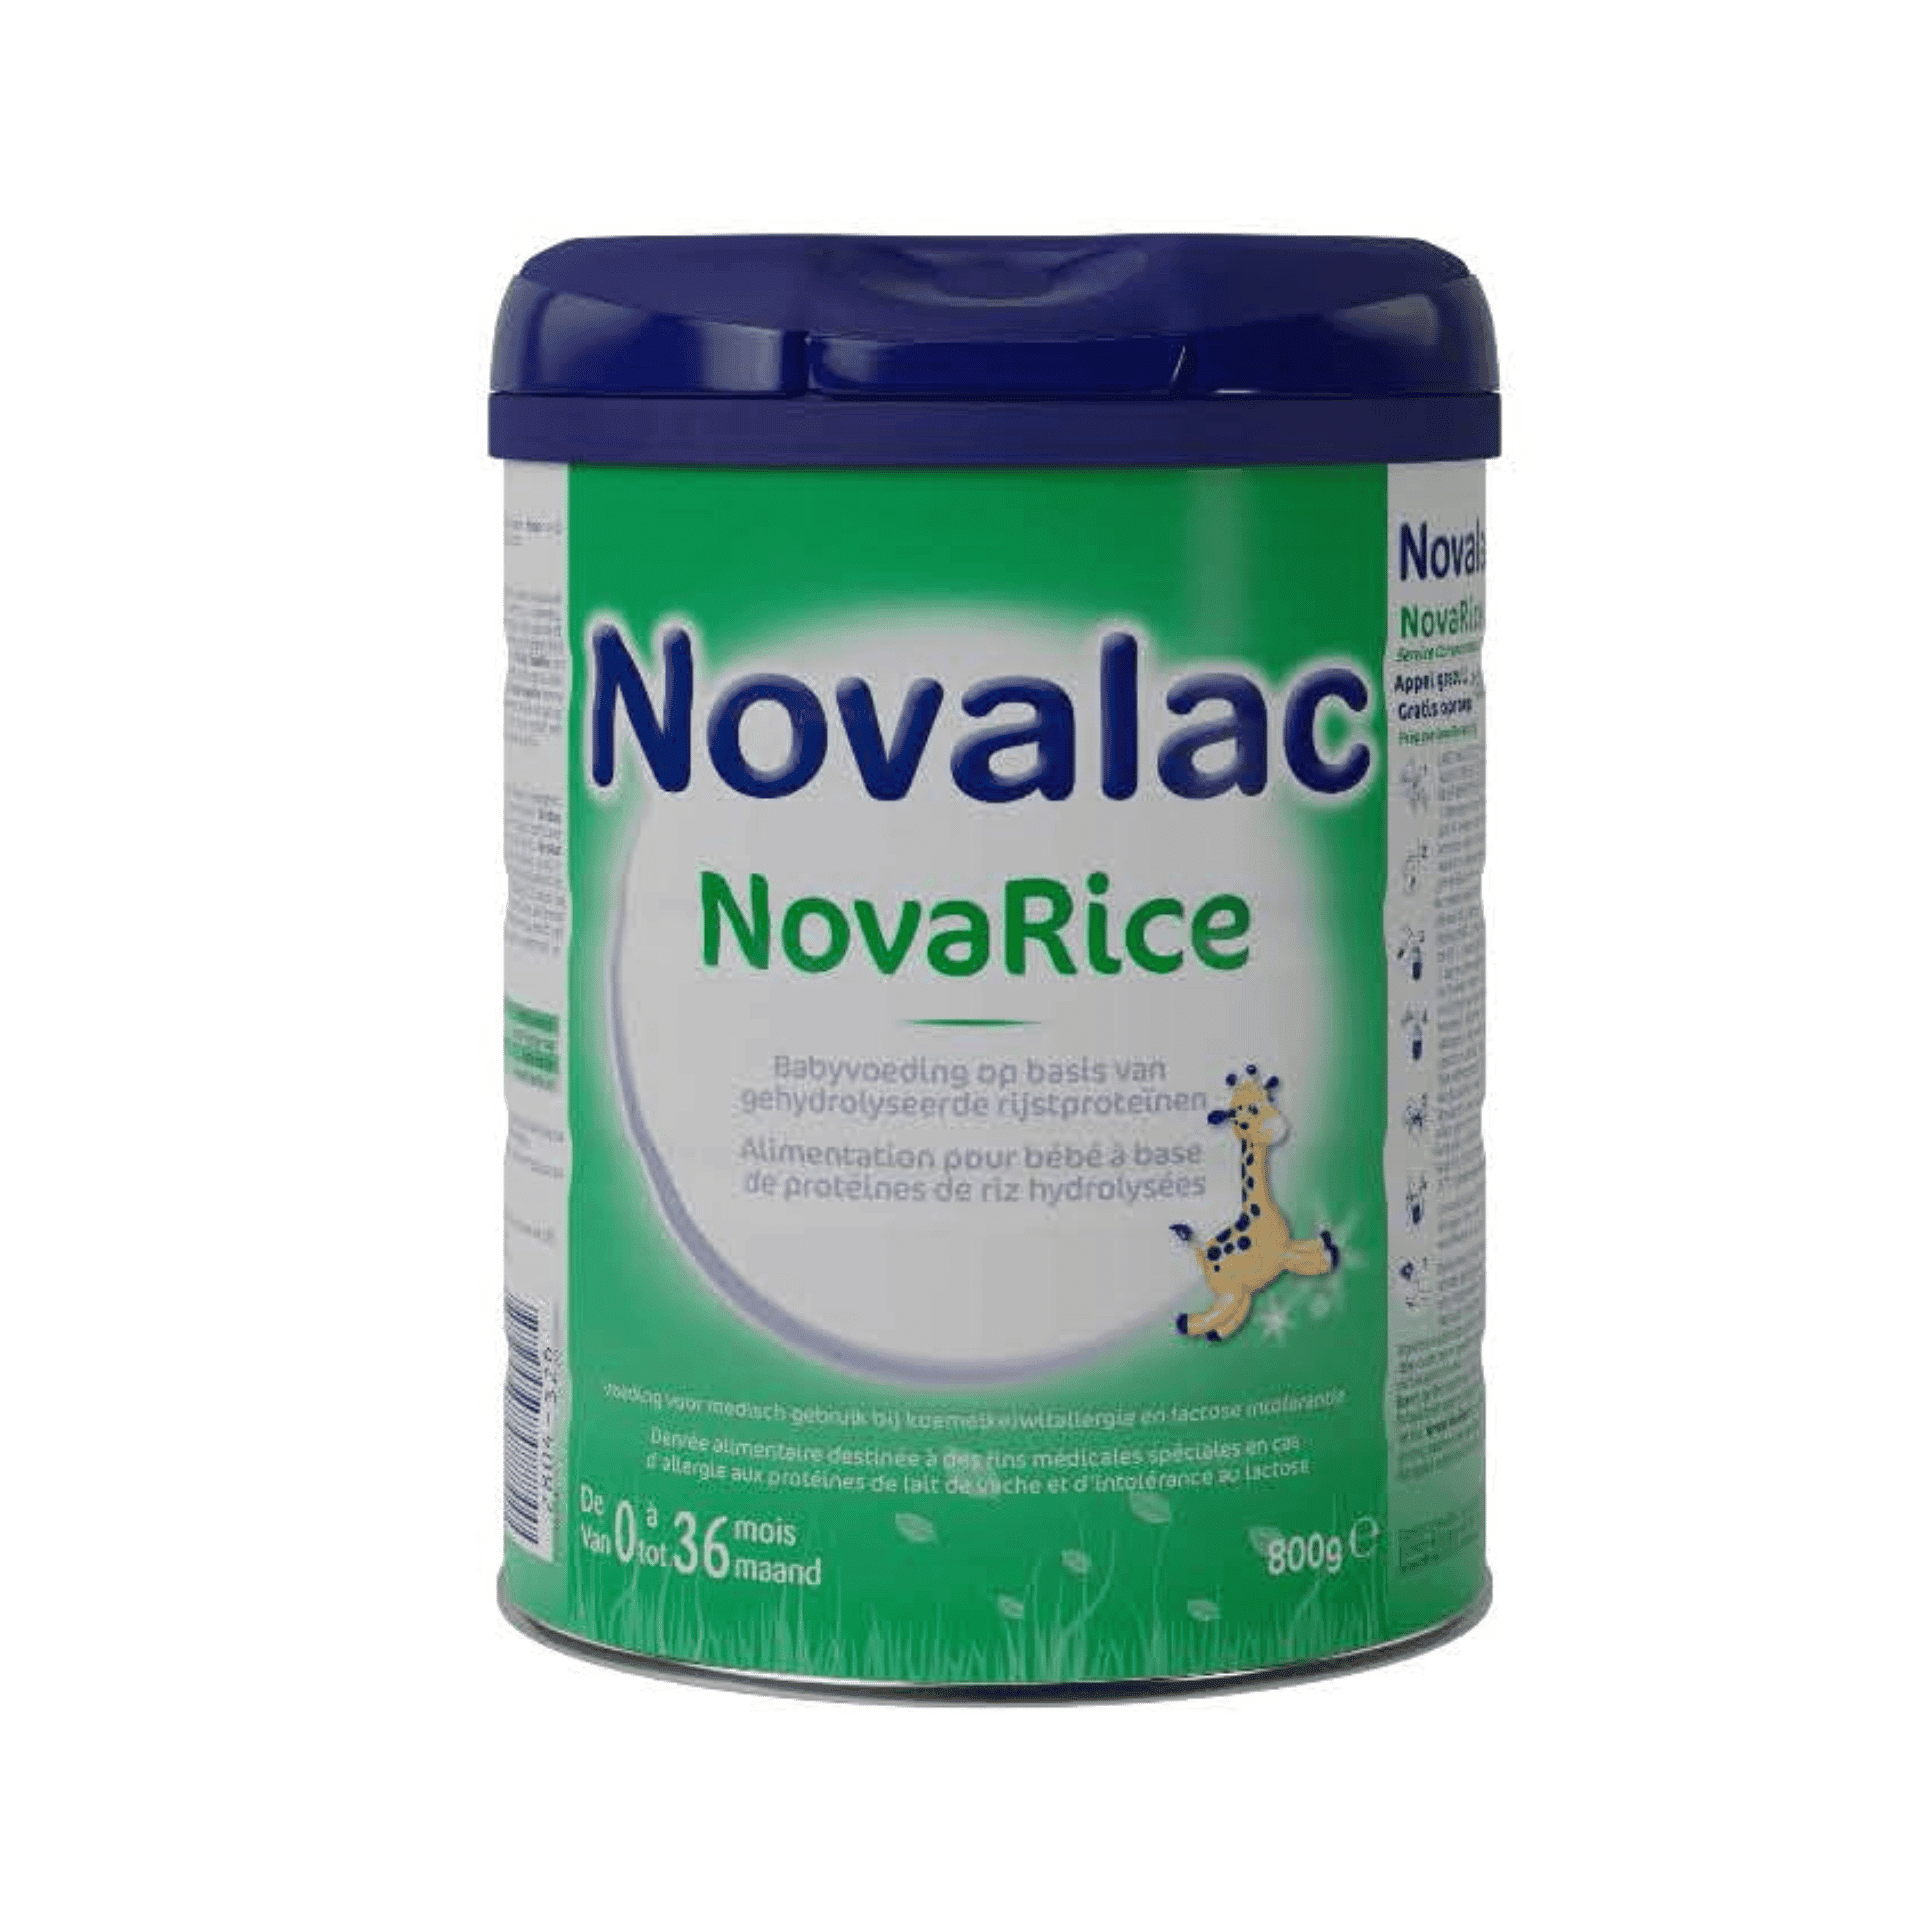 Novalac NovaRice